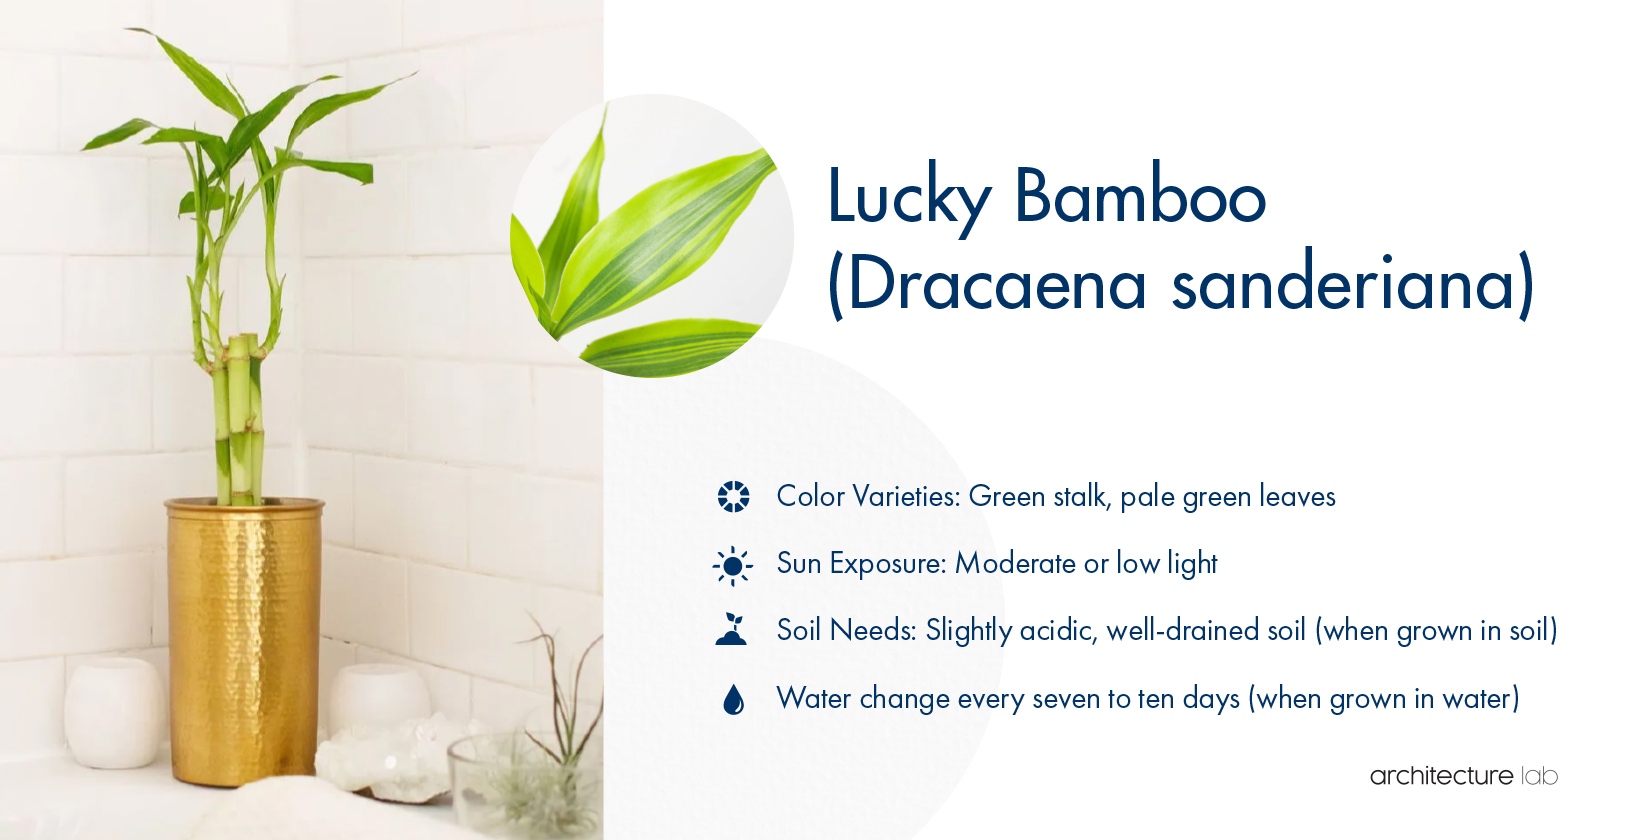 4. Lucky bamboo (dracaena sanderiana)